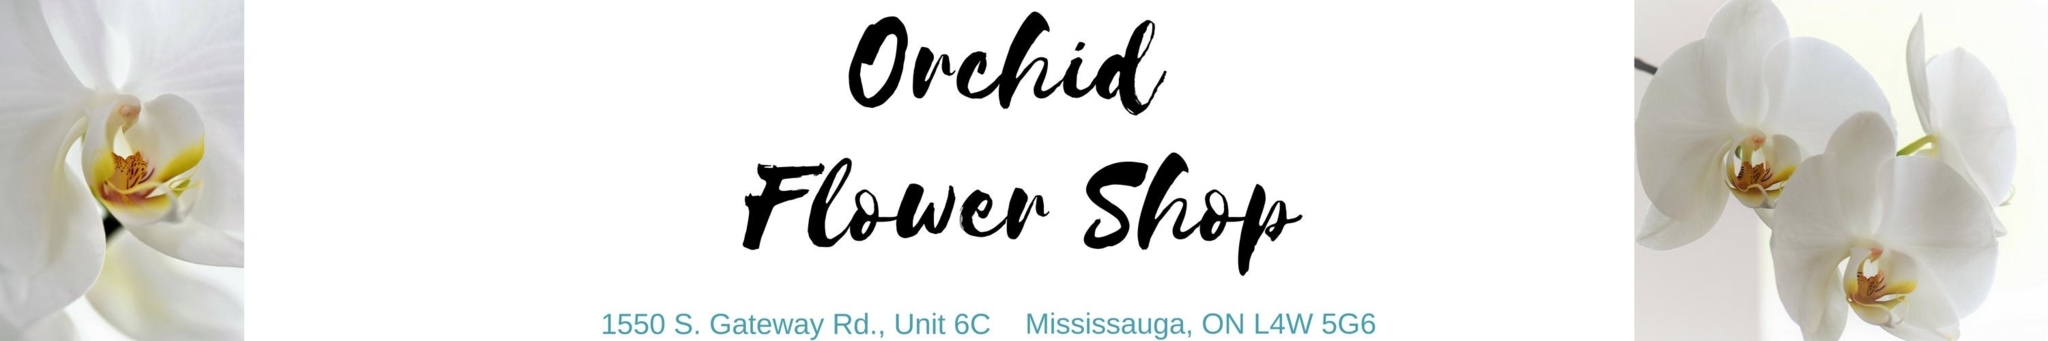 Orchid Flower Shop - Fleuristes et magasins de fleurs